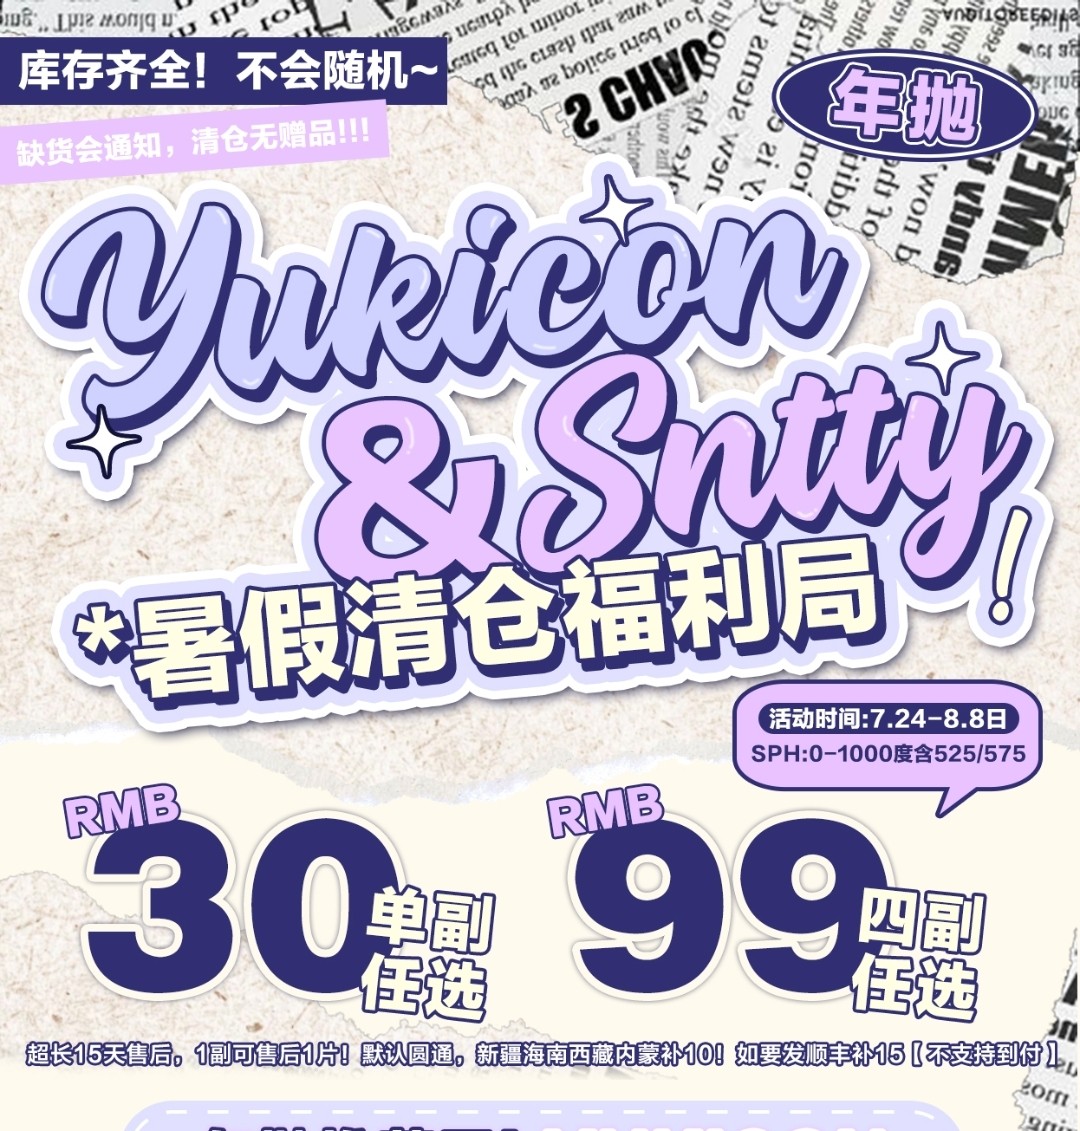 【年抛秒杀】YUKICON·SNTTY暑假清仓福利局上线